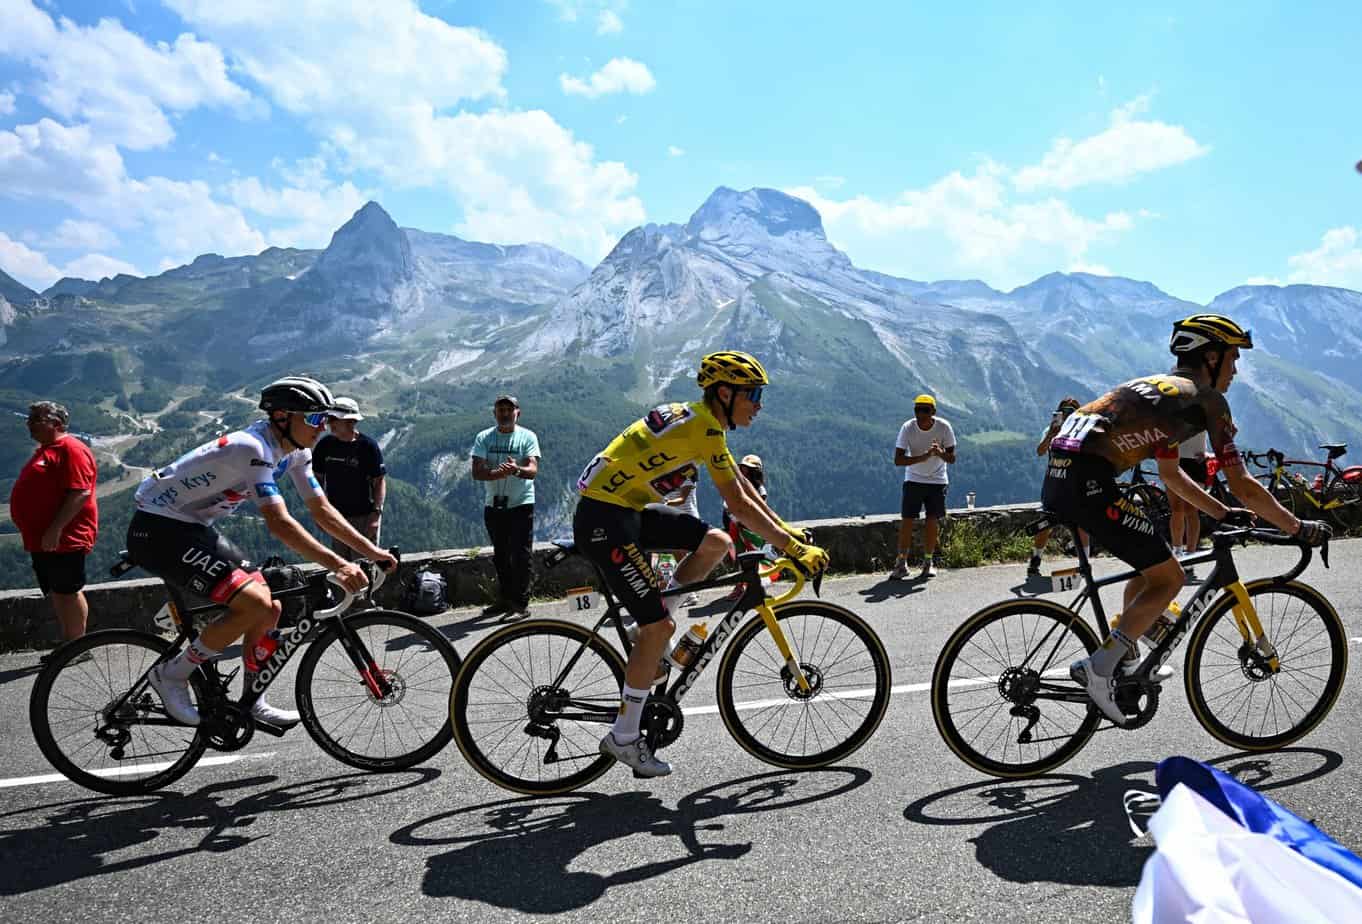 Vista previa y probabilidades de apuestas del Tour de Francia 2023